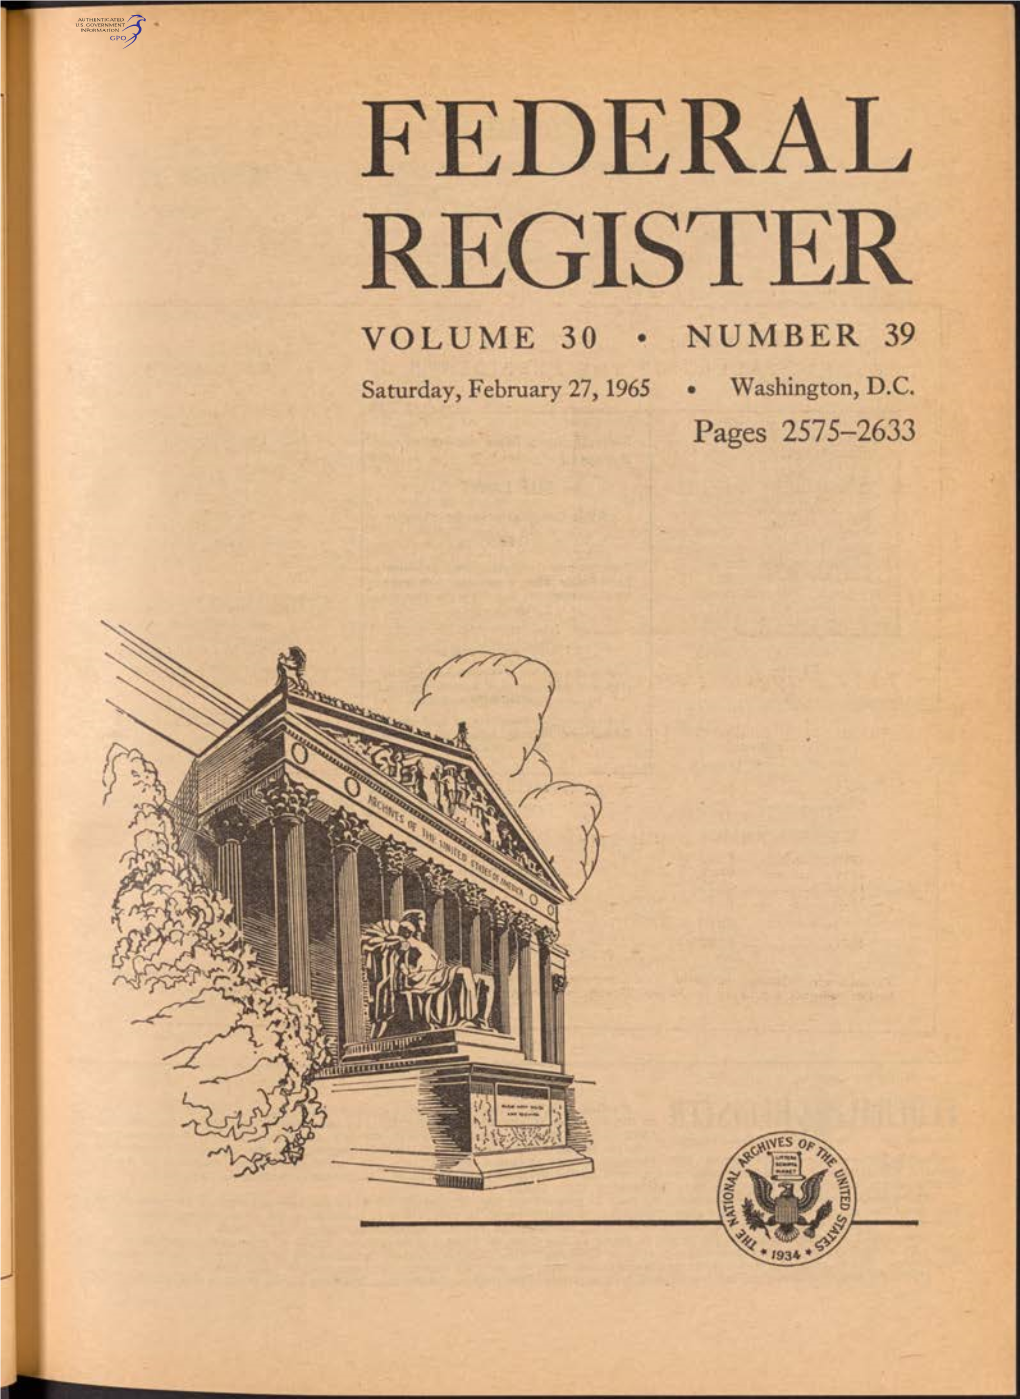 Federal Register Volume 30 • Number 39